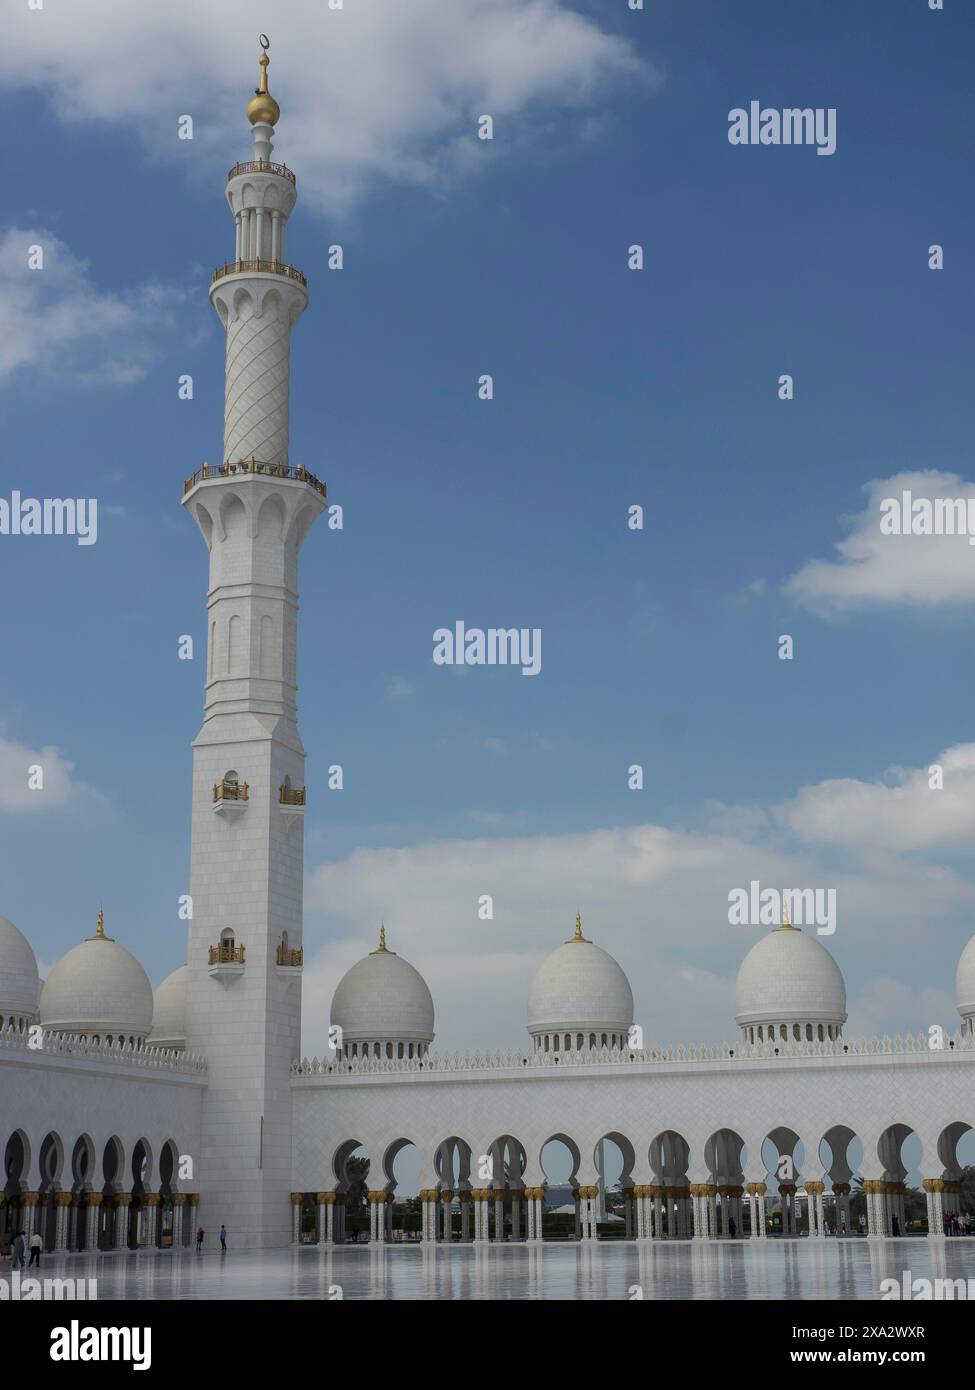 Minarett und weiße Gebäude einer Moschee mit Bögen, dargestellt in islamischer Architektur unter blauem Himmel, Abu Dhabi, Arabische Emirate Stockfoto